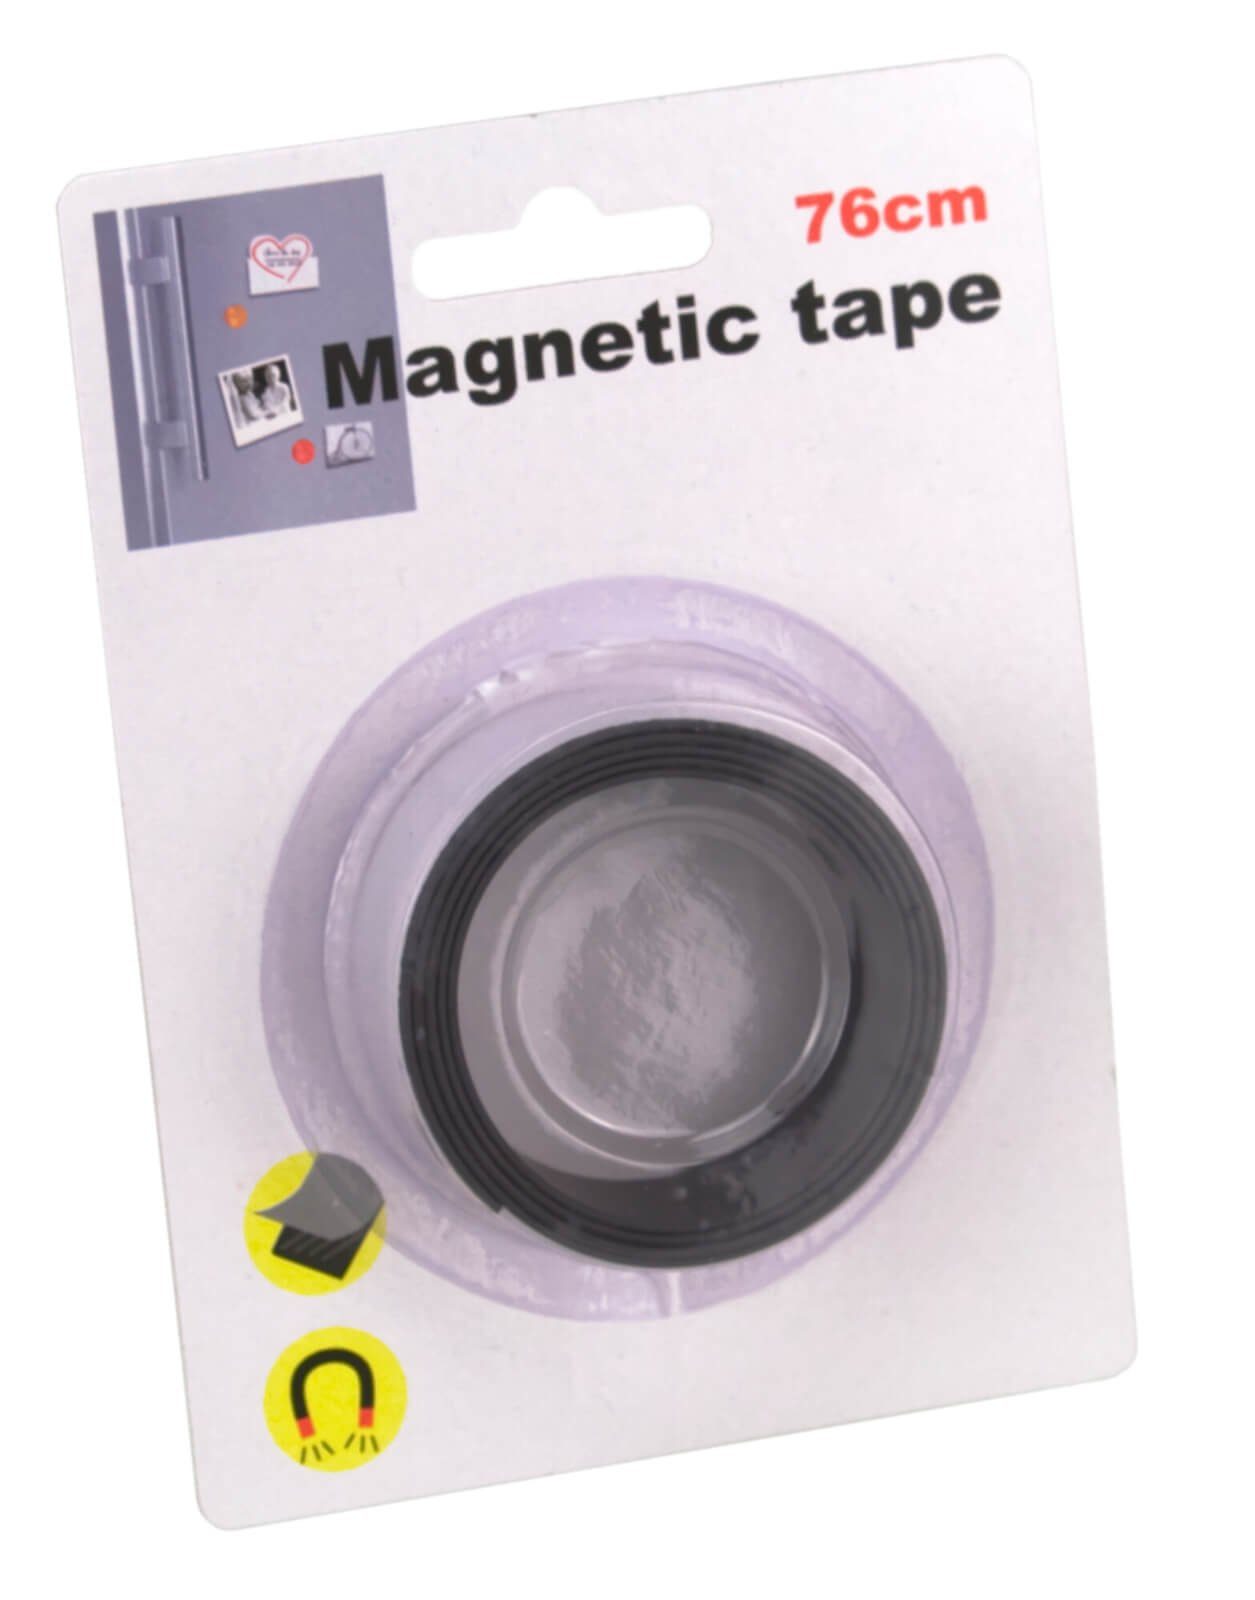 76cm Magnetklebeband Tape Klebeband magnetisches